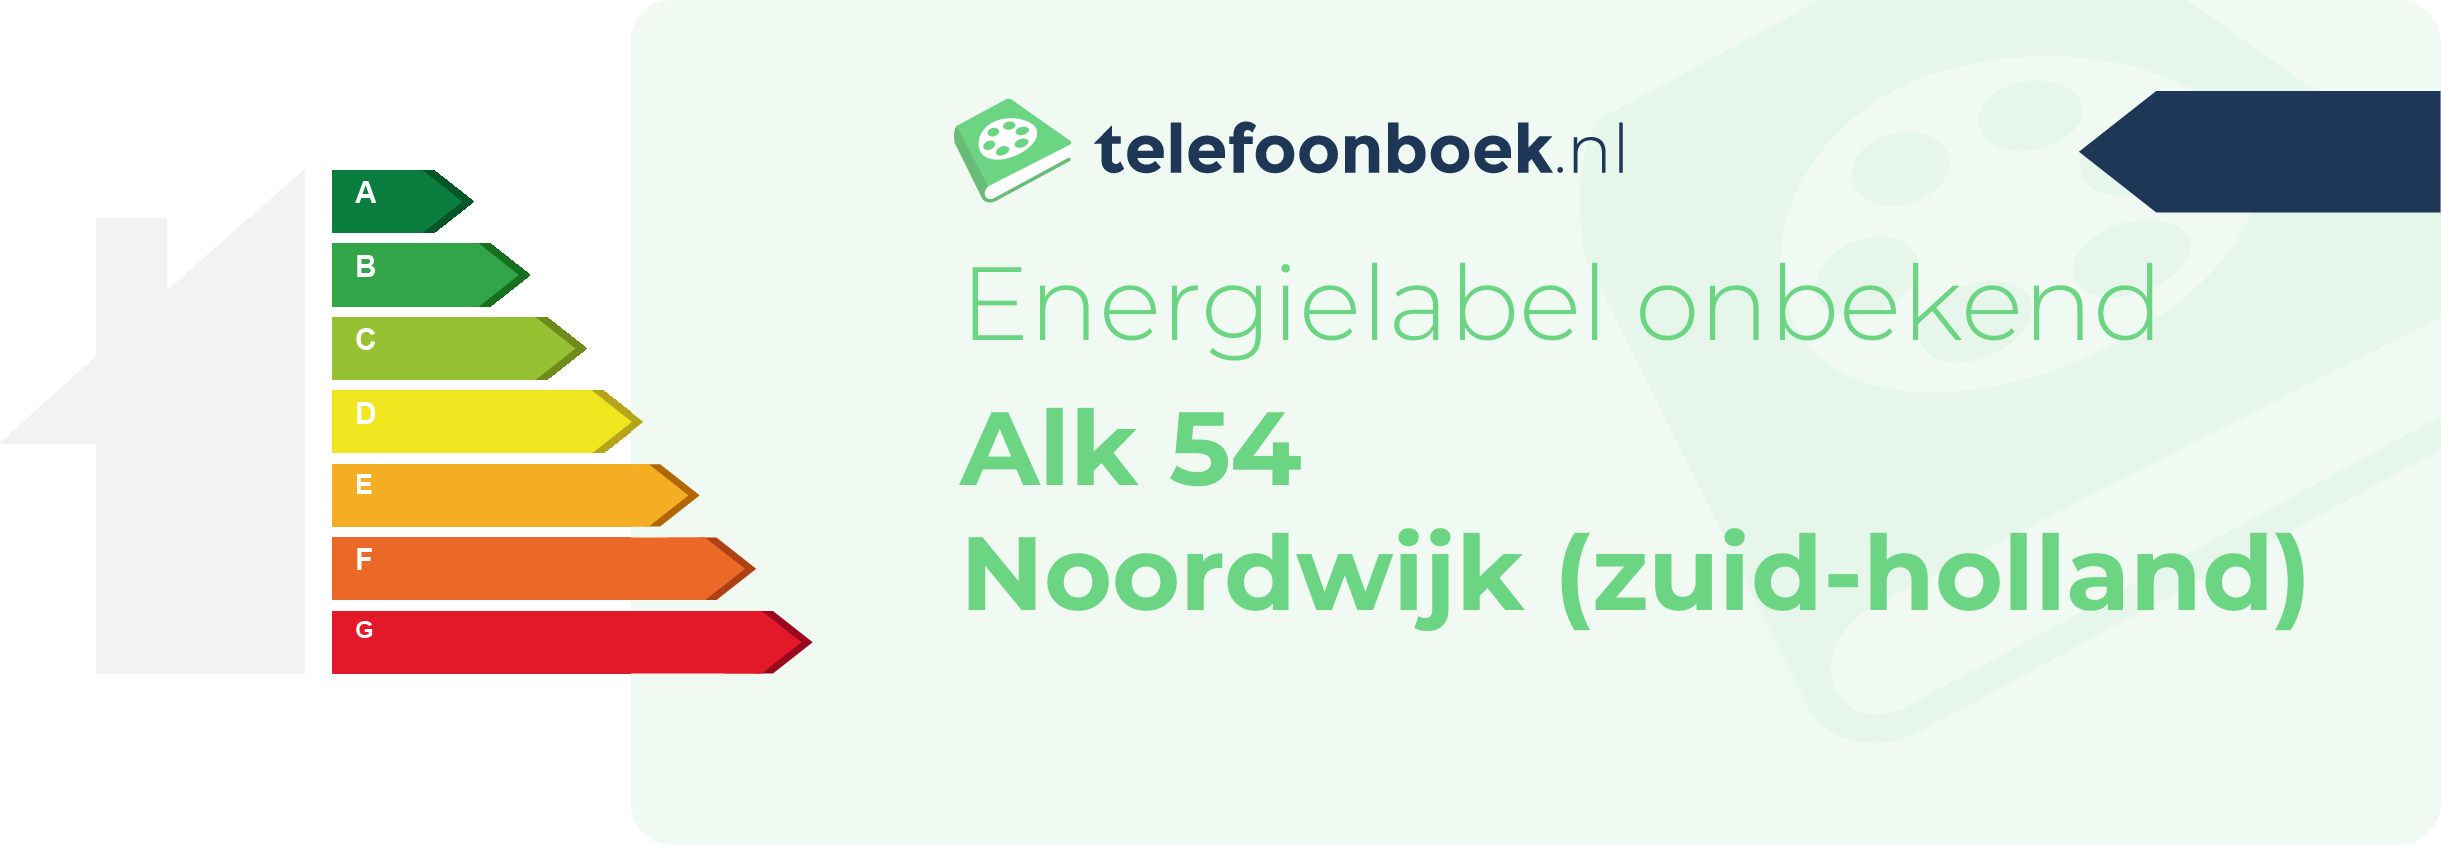 Energielabel Alk 54 Noordwijk (Zuid-Holland)